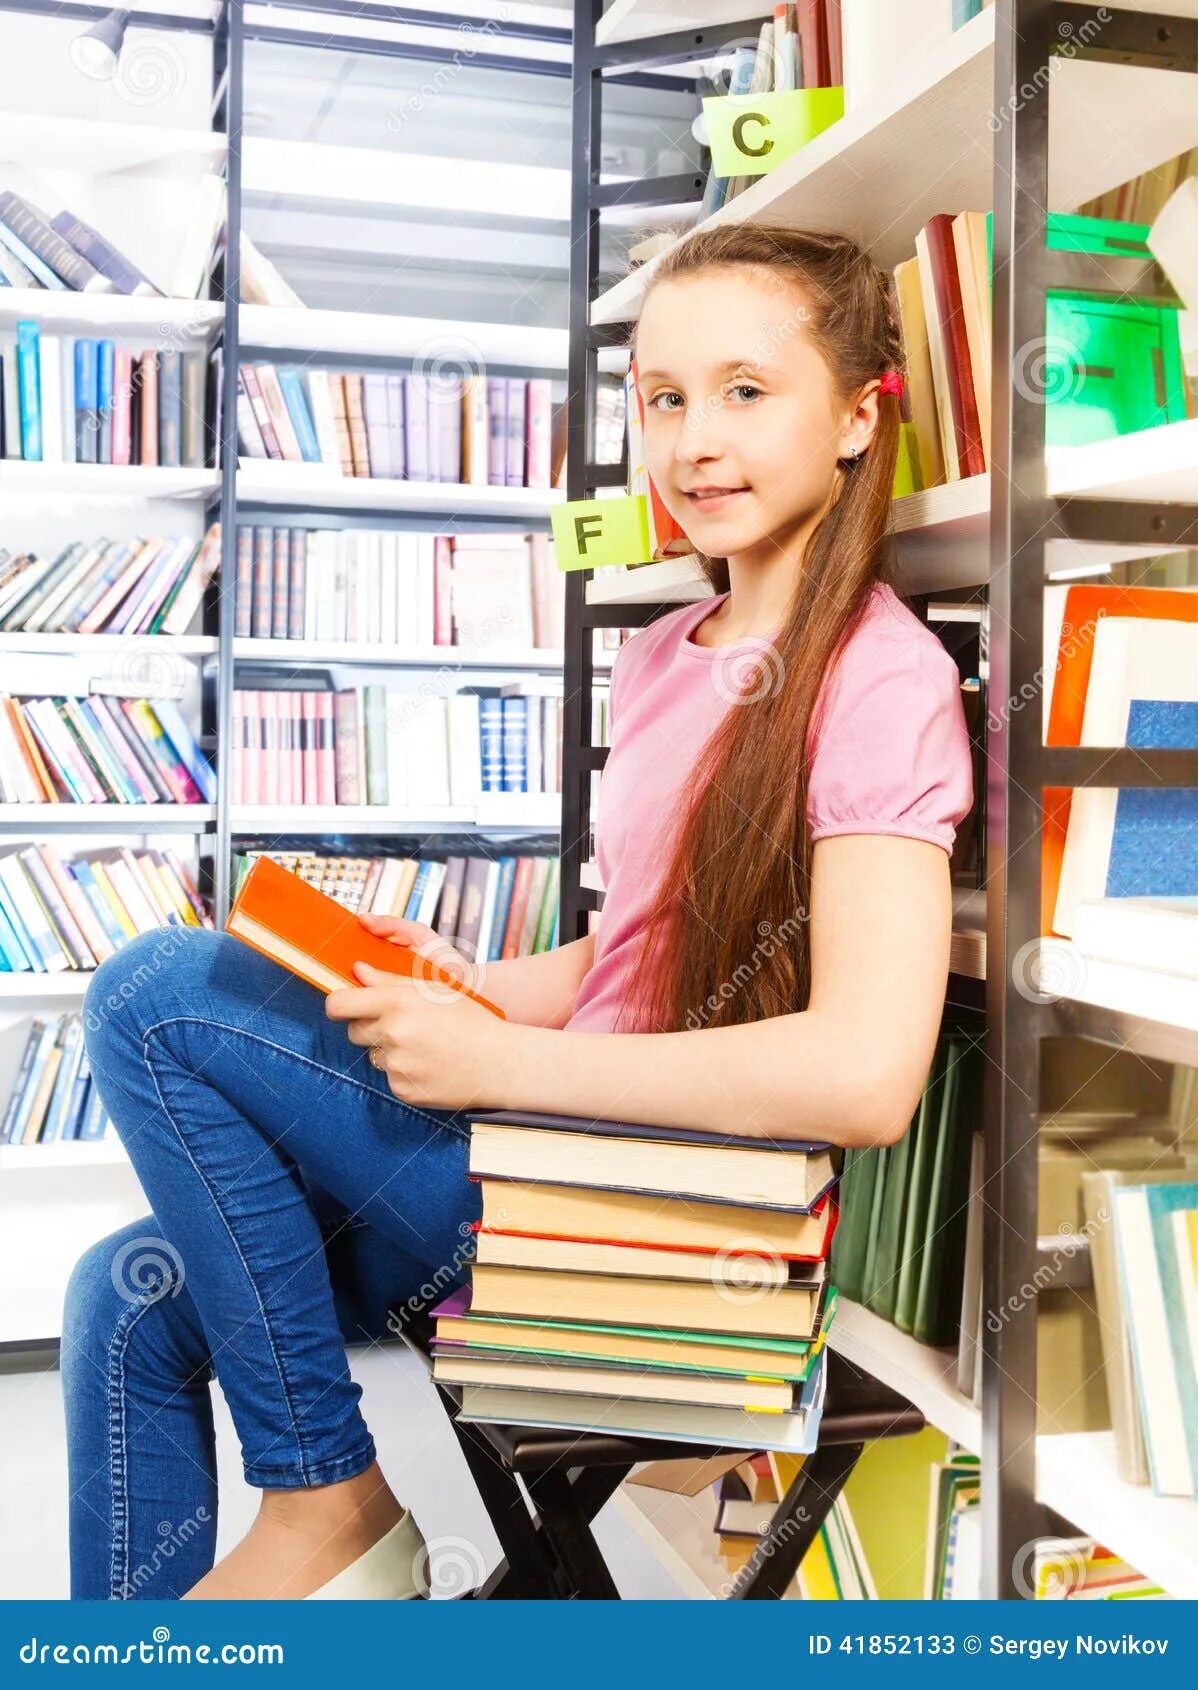 Она сидит в библиотеке. Сидит в библиотеке. Девочка сидит в библиотеке. Сидит задумчиво в библиотеке. Девочка на лесенке в библиотеке.